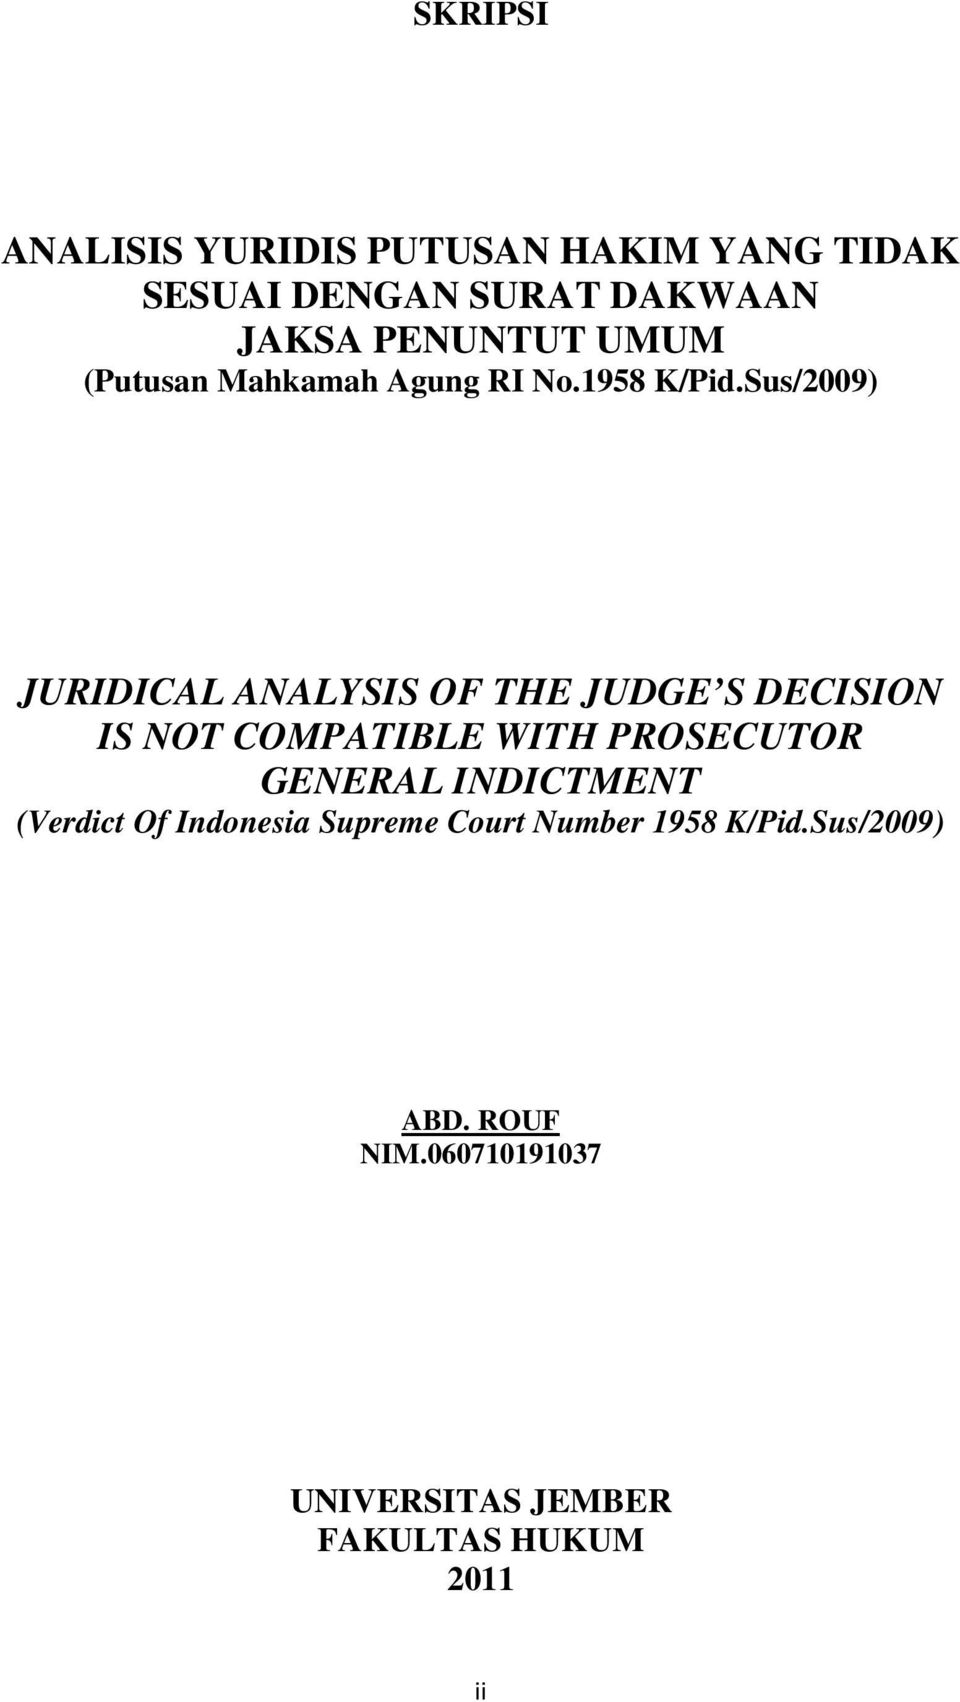 Analisis Yuridis Putusan Hakim Yang Tidak Sesuai Dengan